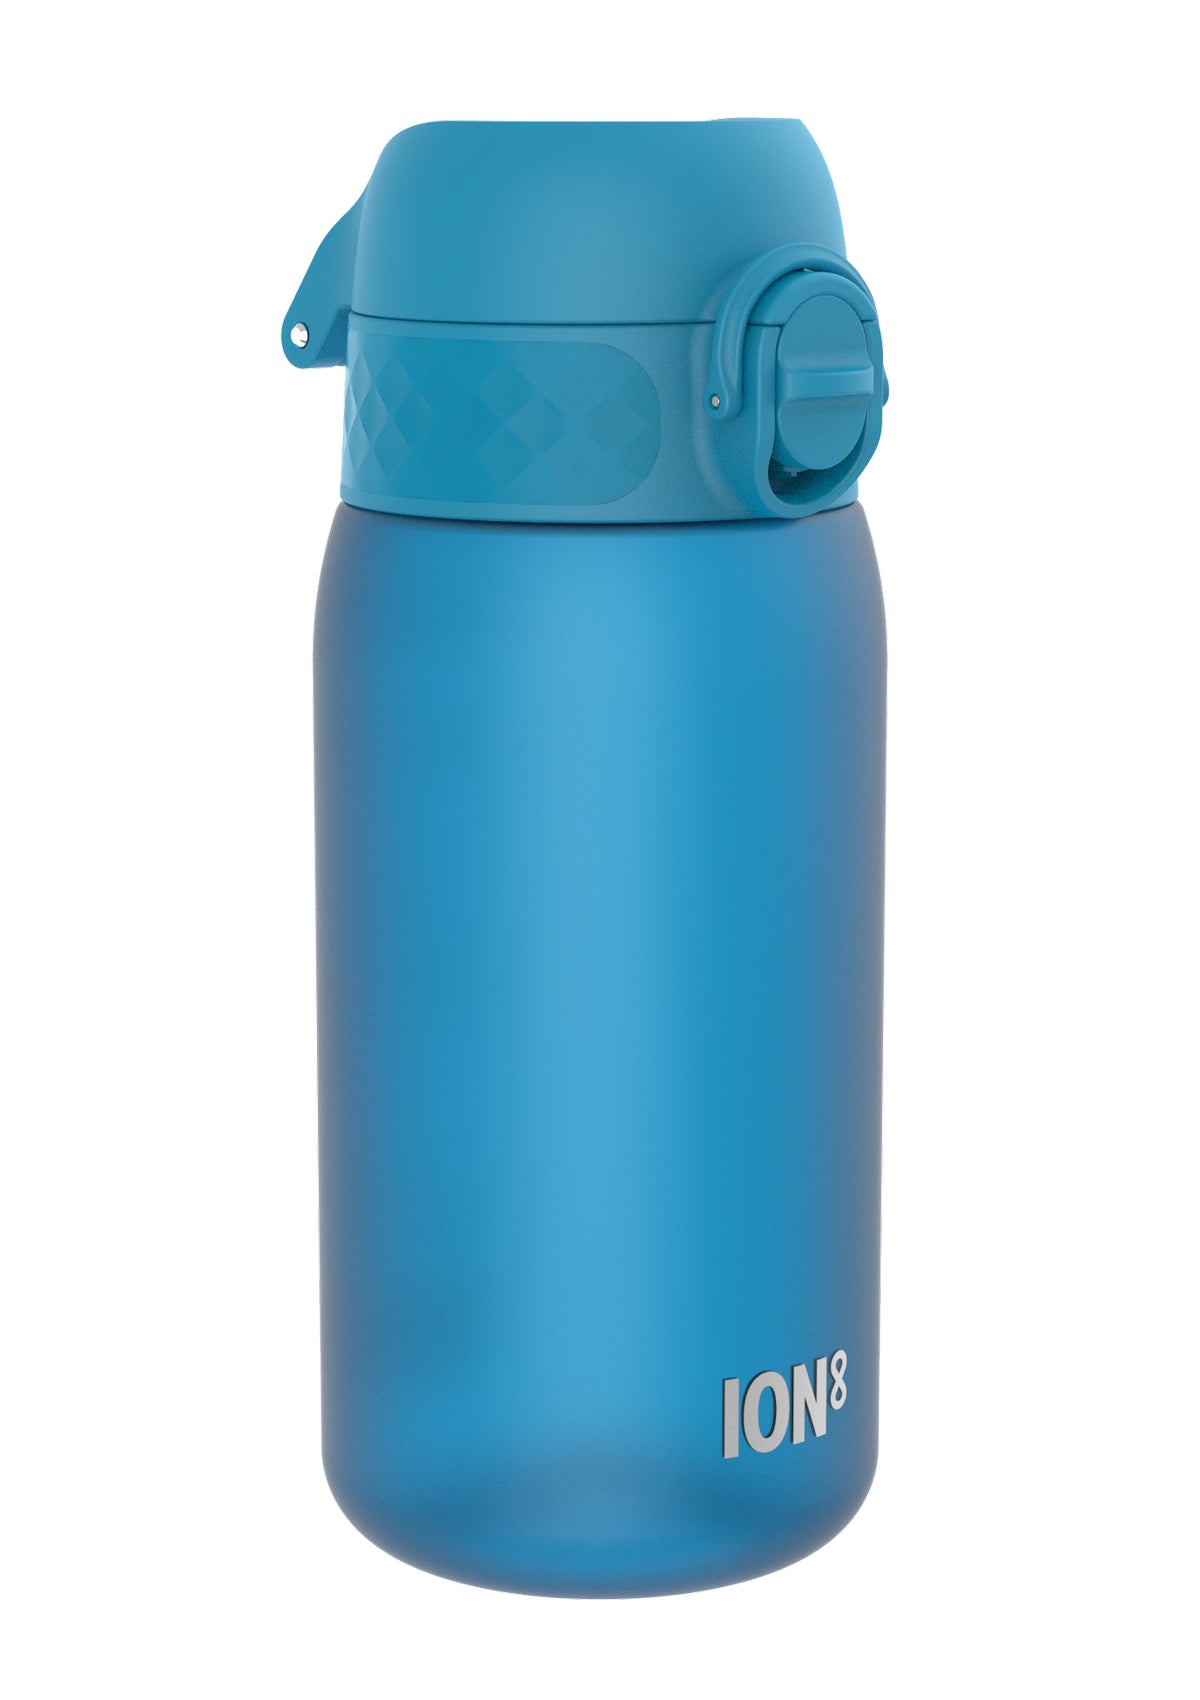 ION8 350ML RECYCLON POD Water Bottle Leak Proof BPA Free